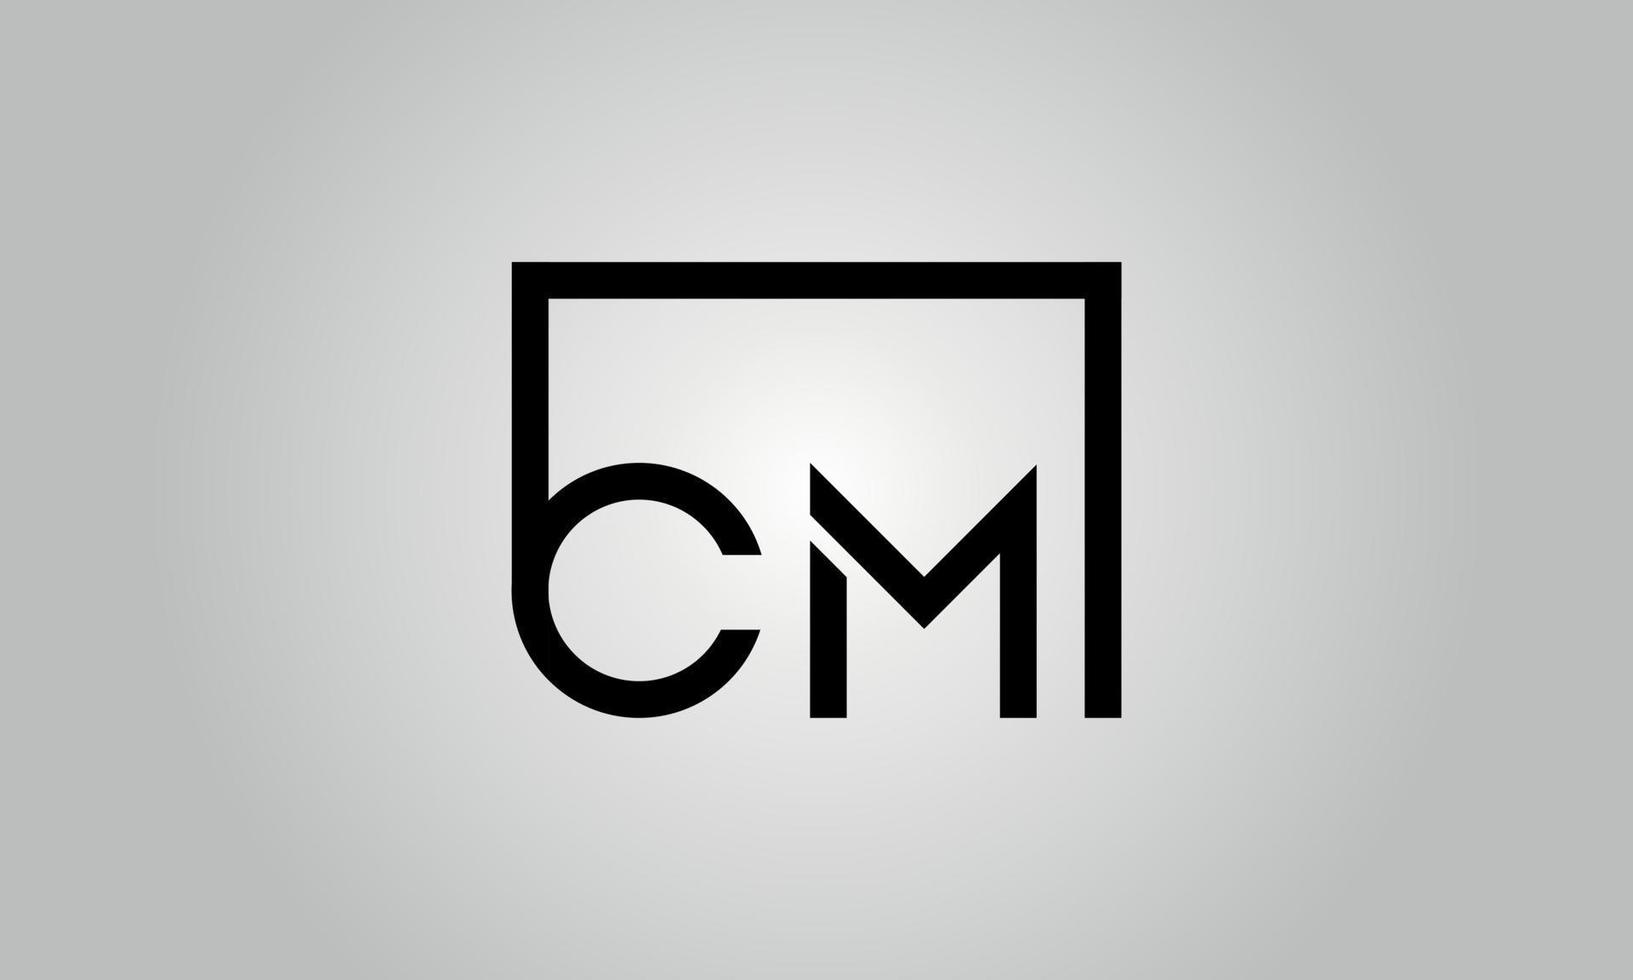 brief cm logo ontwerp. cm logo met plein vorm in zwart kleuren vector vrij vector sjabloon.